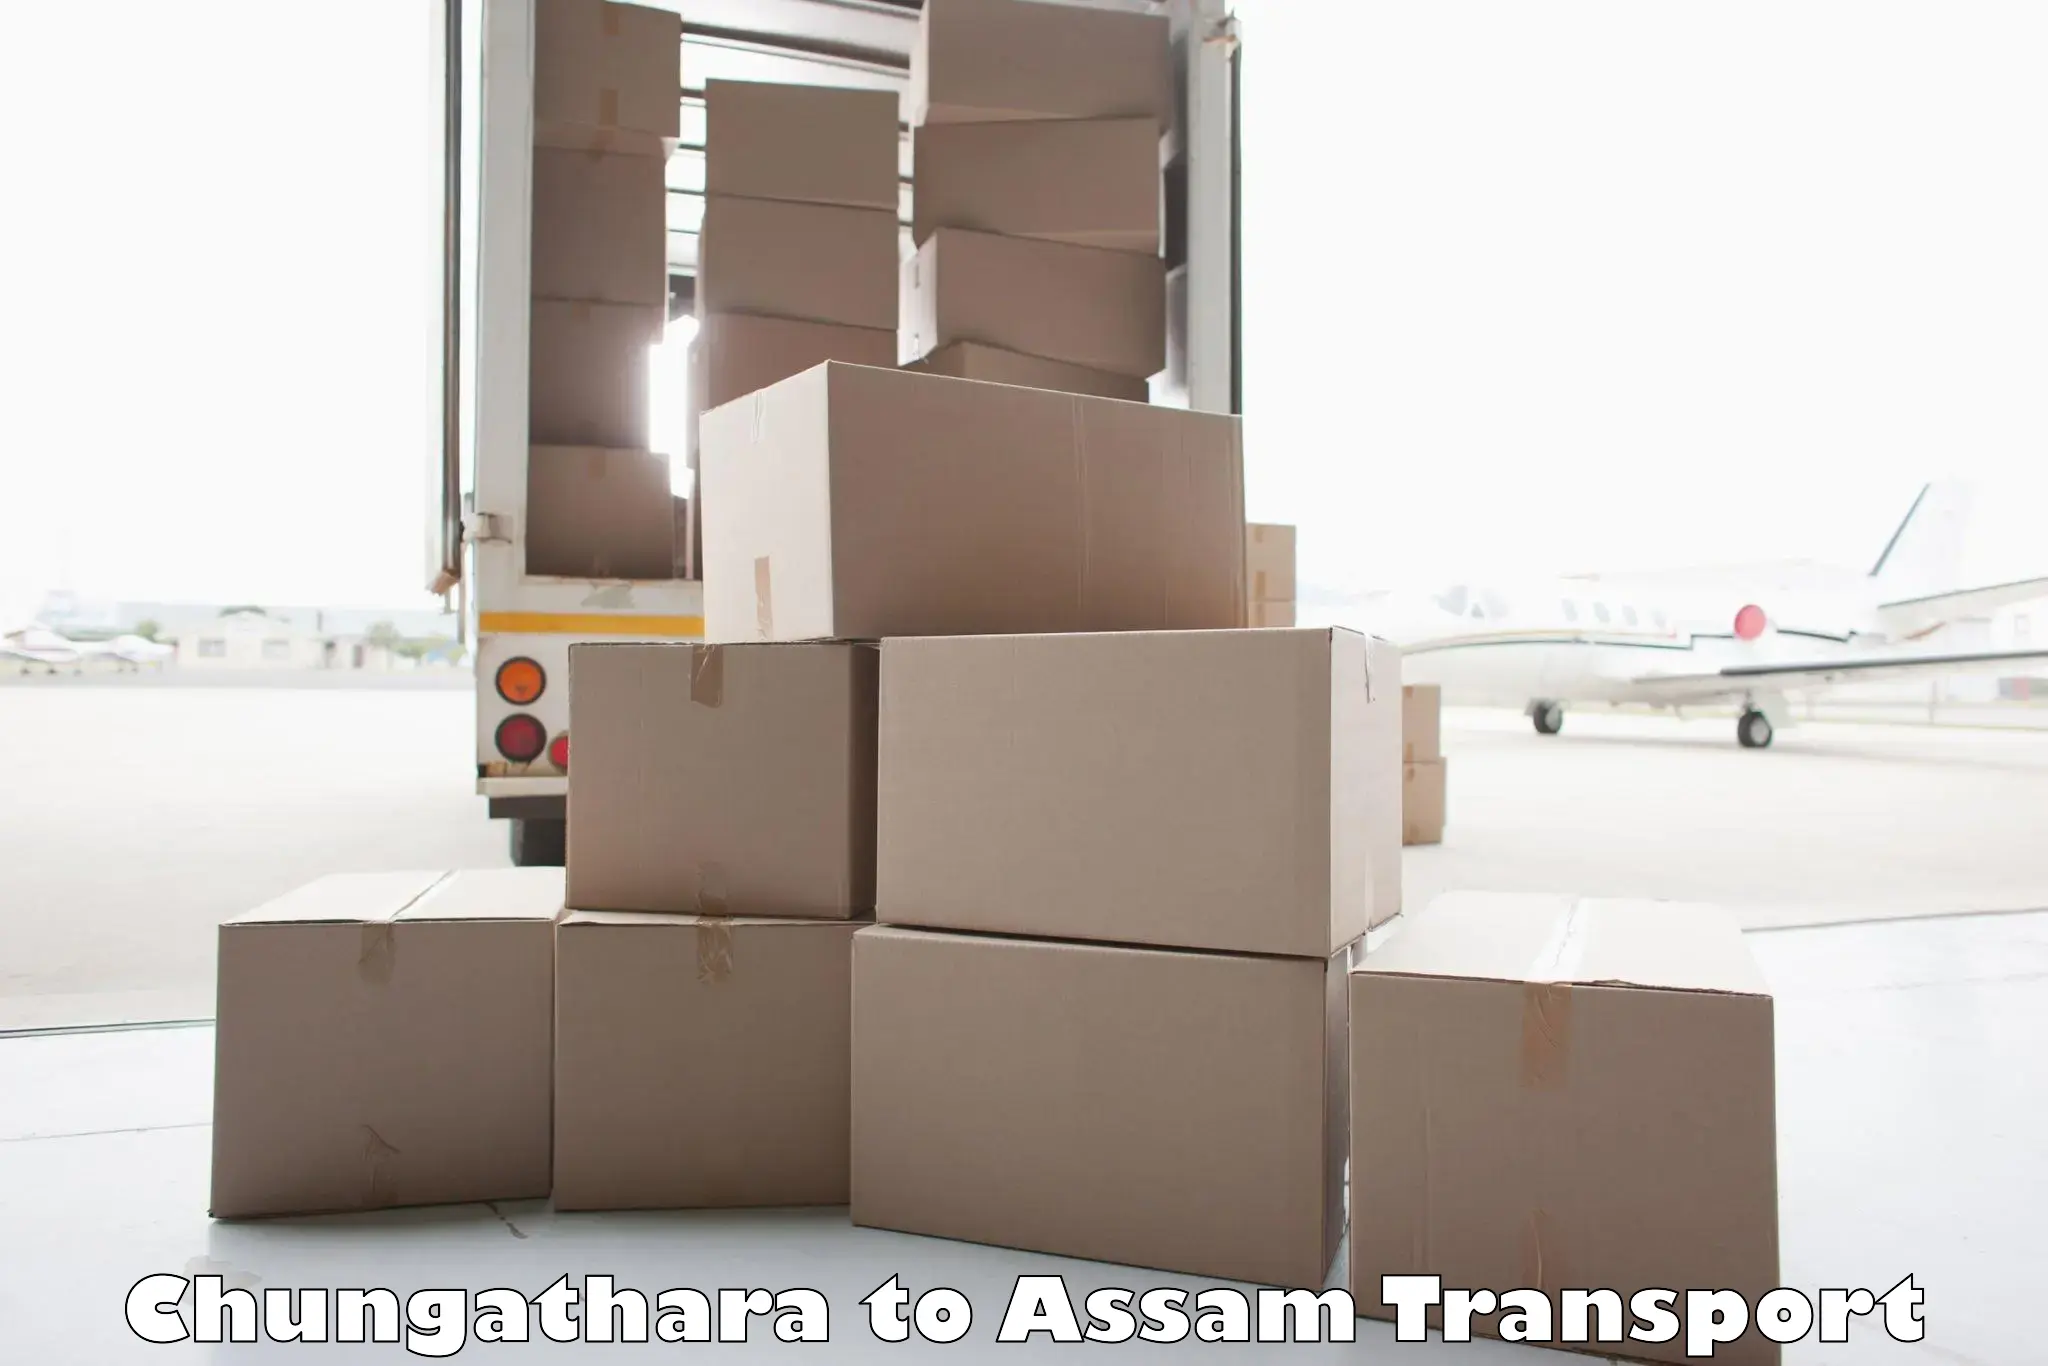 Transport in sharing Chungathara to Kalain